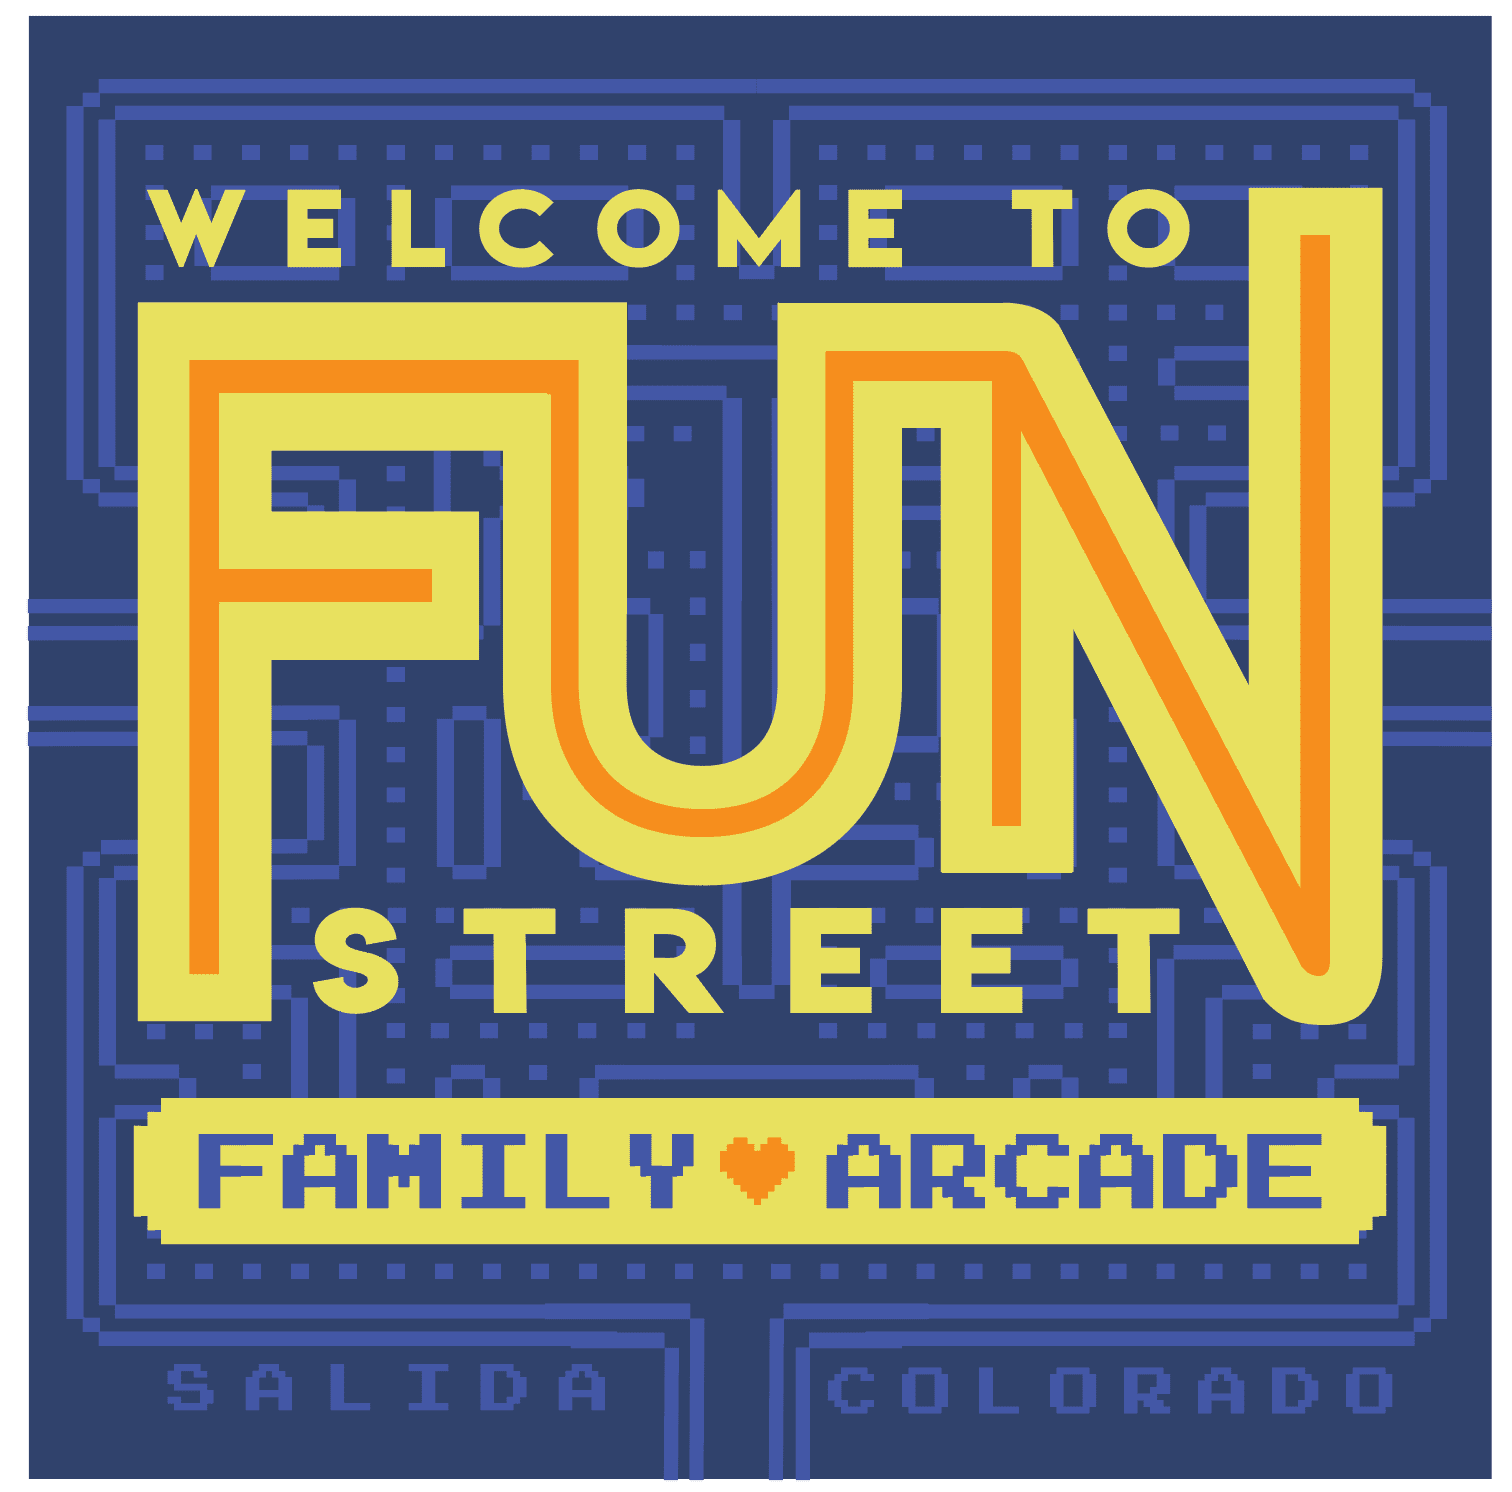 Things to do in Salida Colorado - Fun Street Family Arcade logo